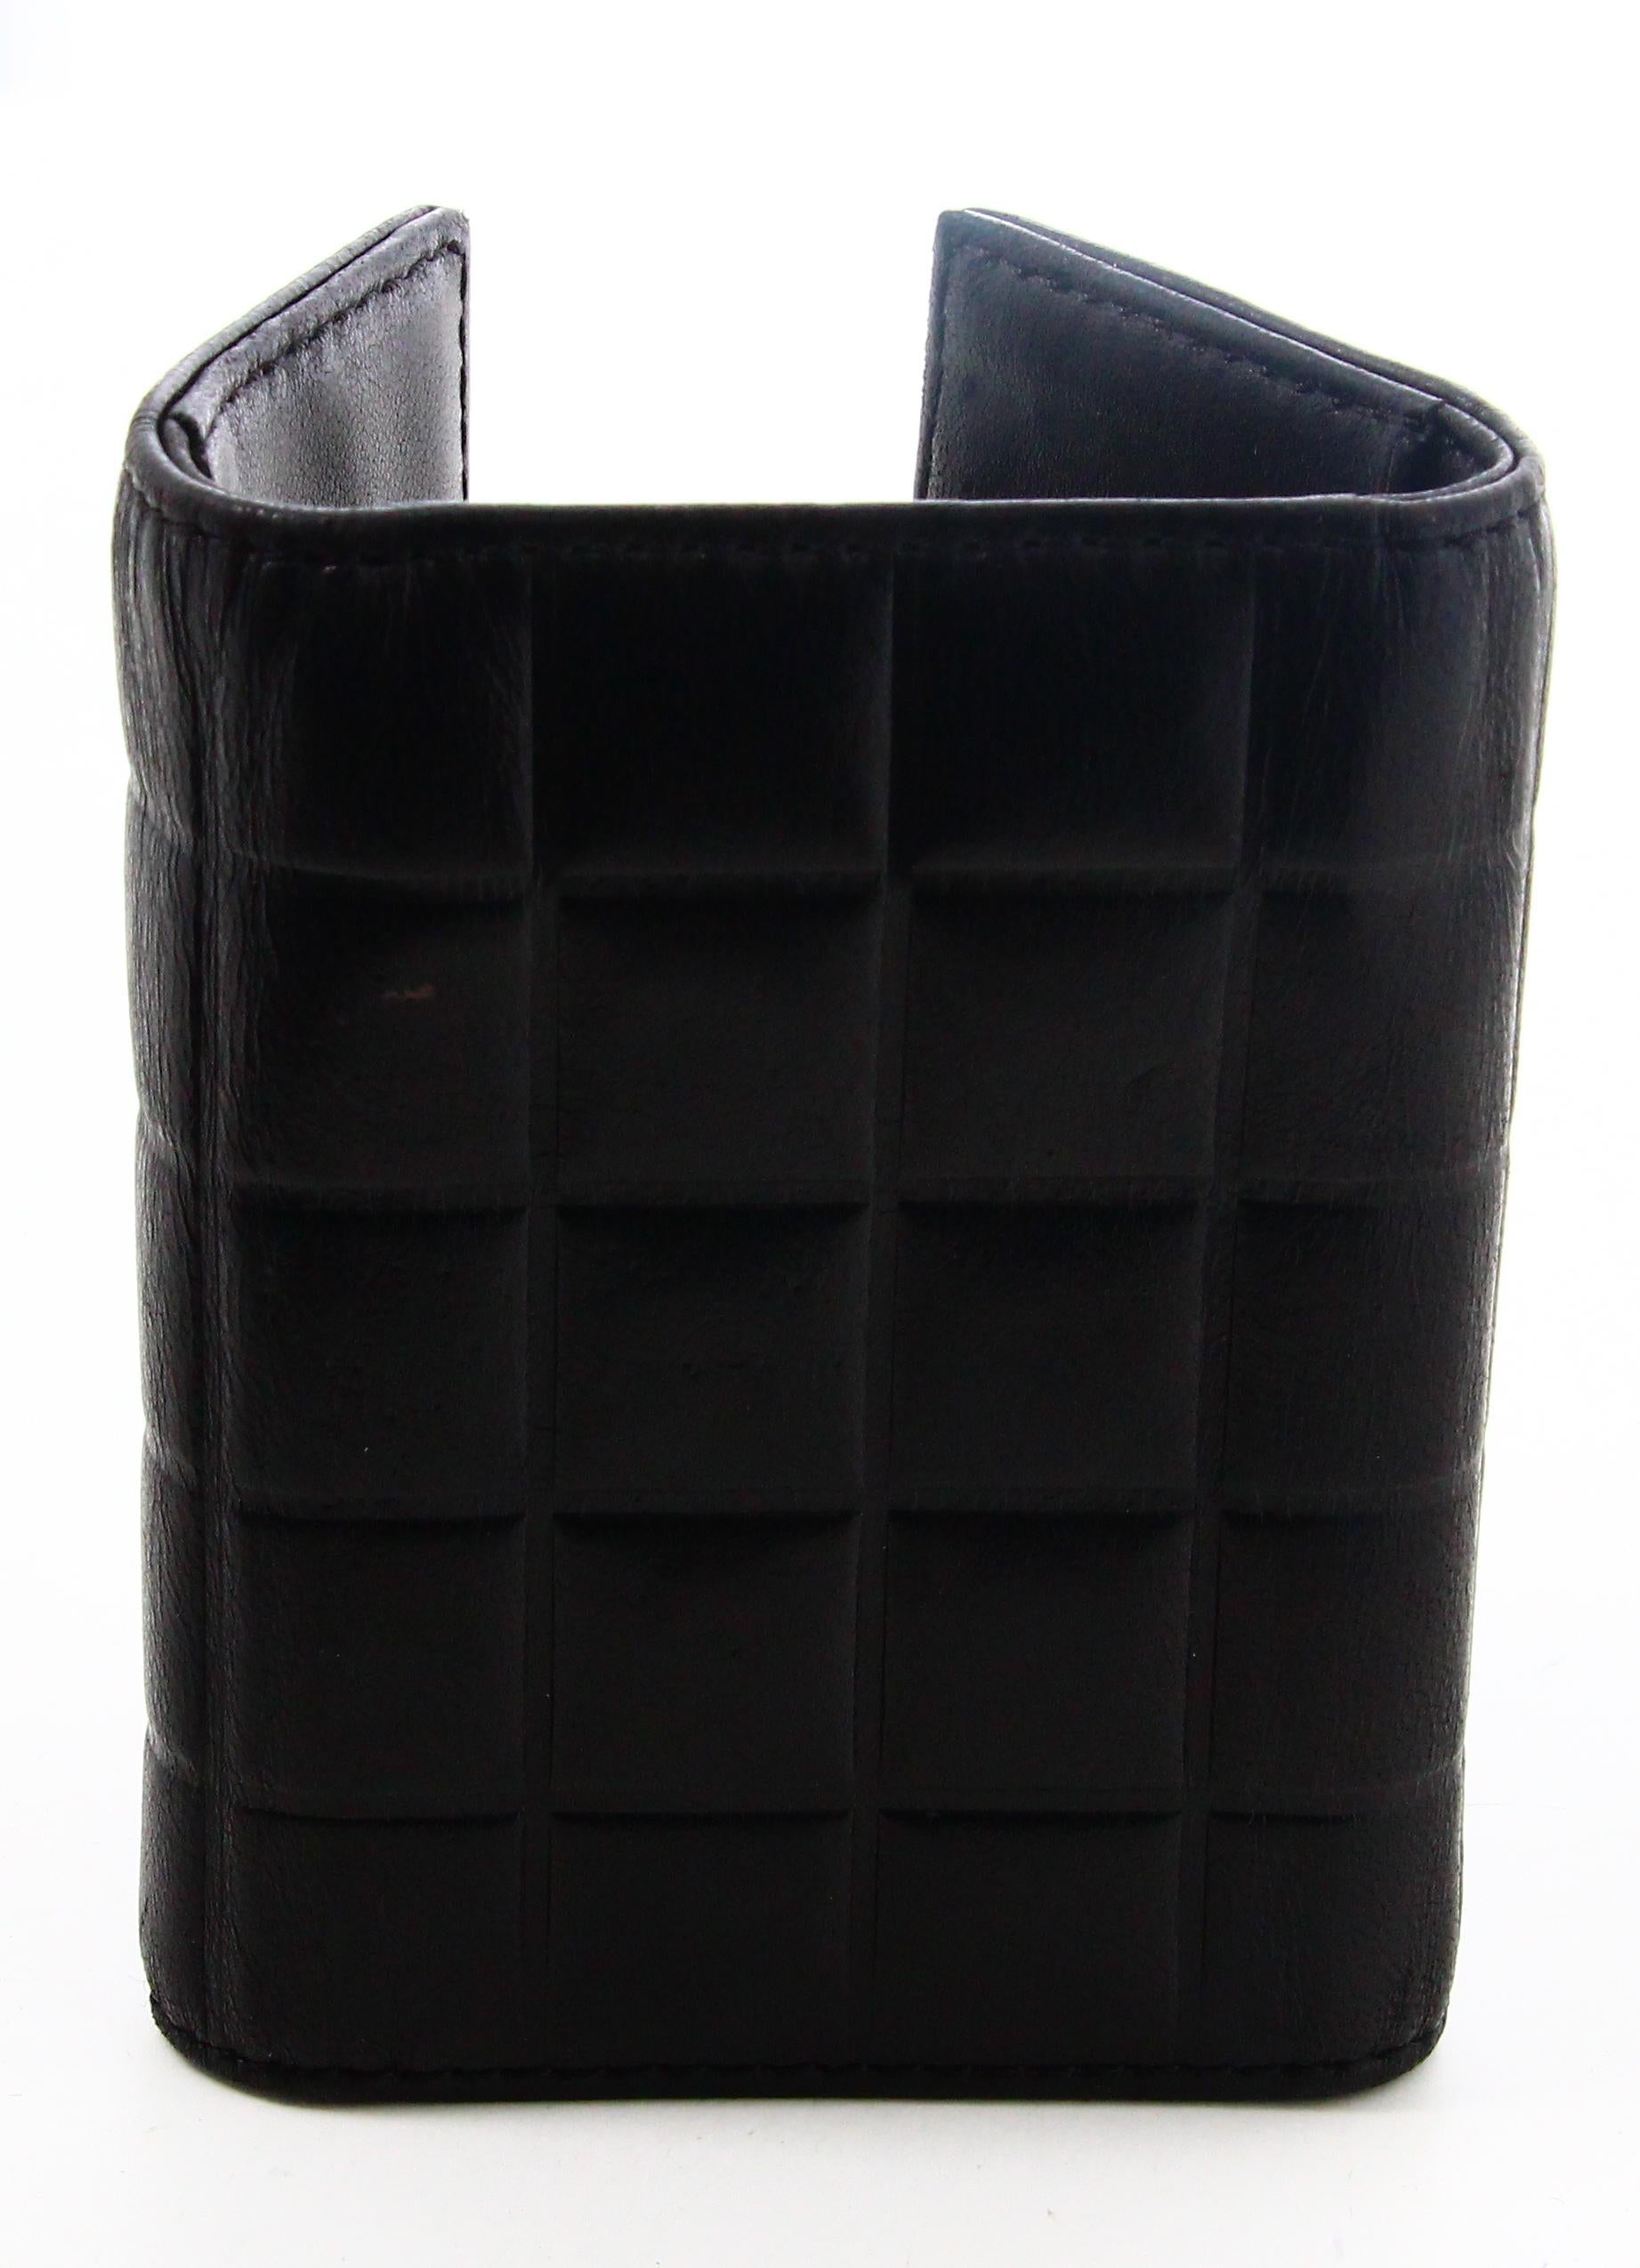 2002 Porte-clés en cuir noir de Chanel

- Très bon état. Présente de très légères traces d'usure au fil du temps.
- Porte-clés Chanel 
- Cuir noir 
- Intérieur en cuir noir avec deux poches 
- Logo doré de Chanel